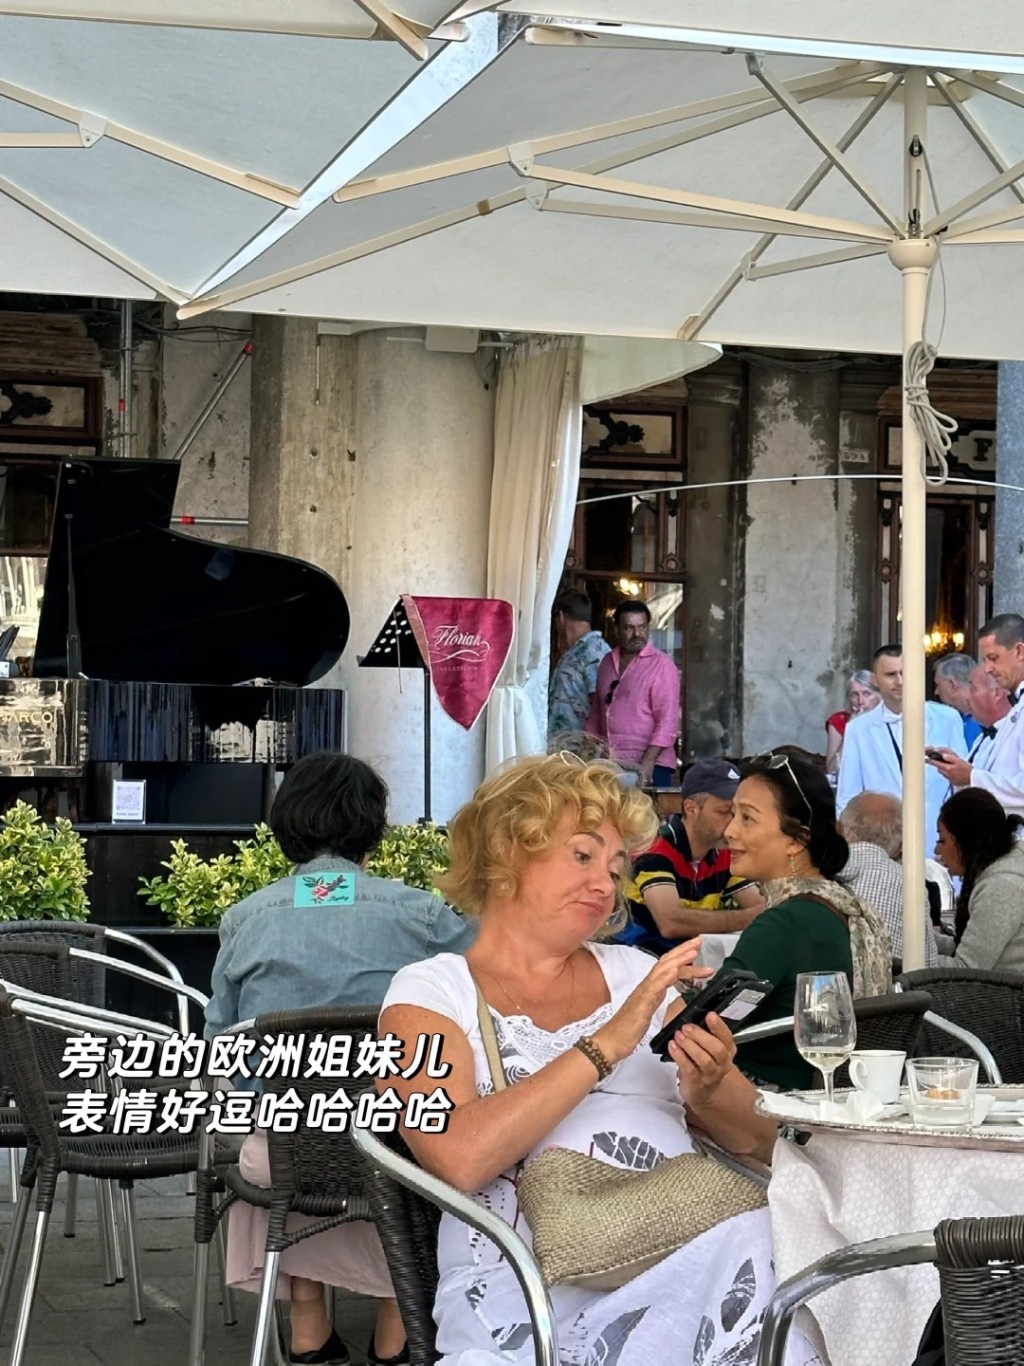 近日有网民在小红书贴出在意大利巧遇刘亦菲和妈妈刘晓莉。